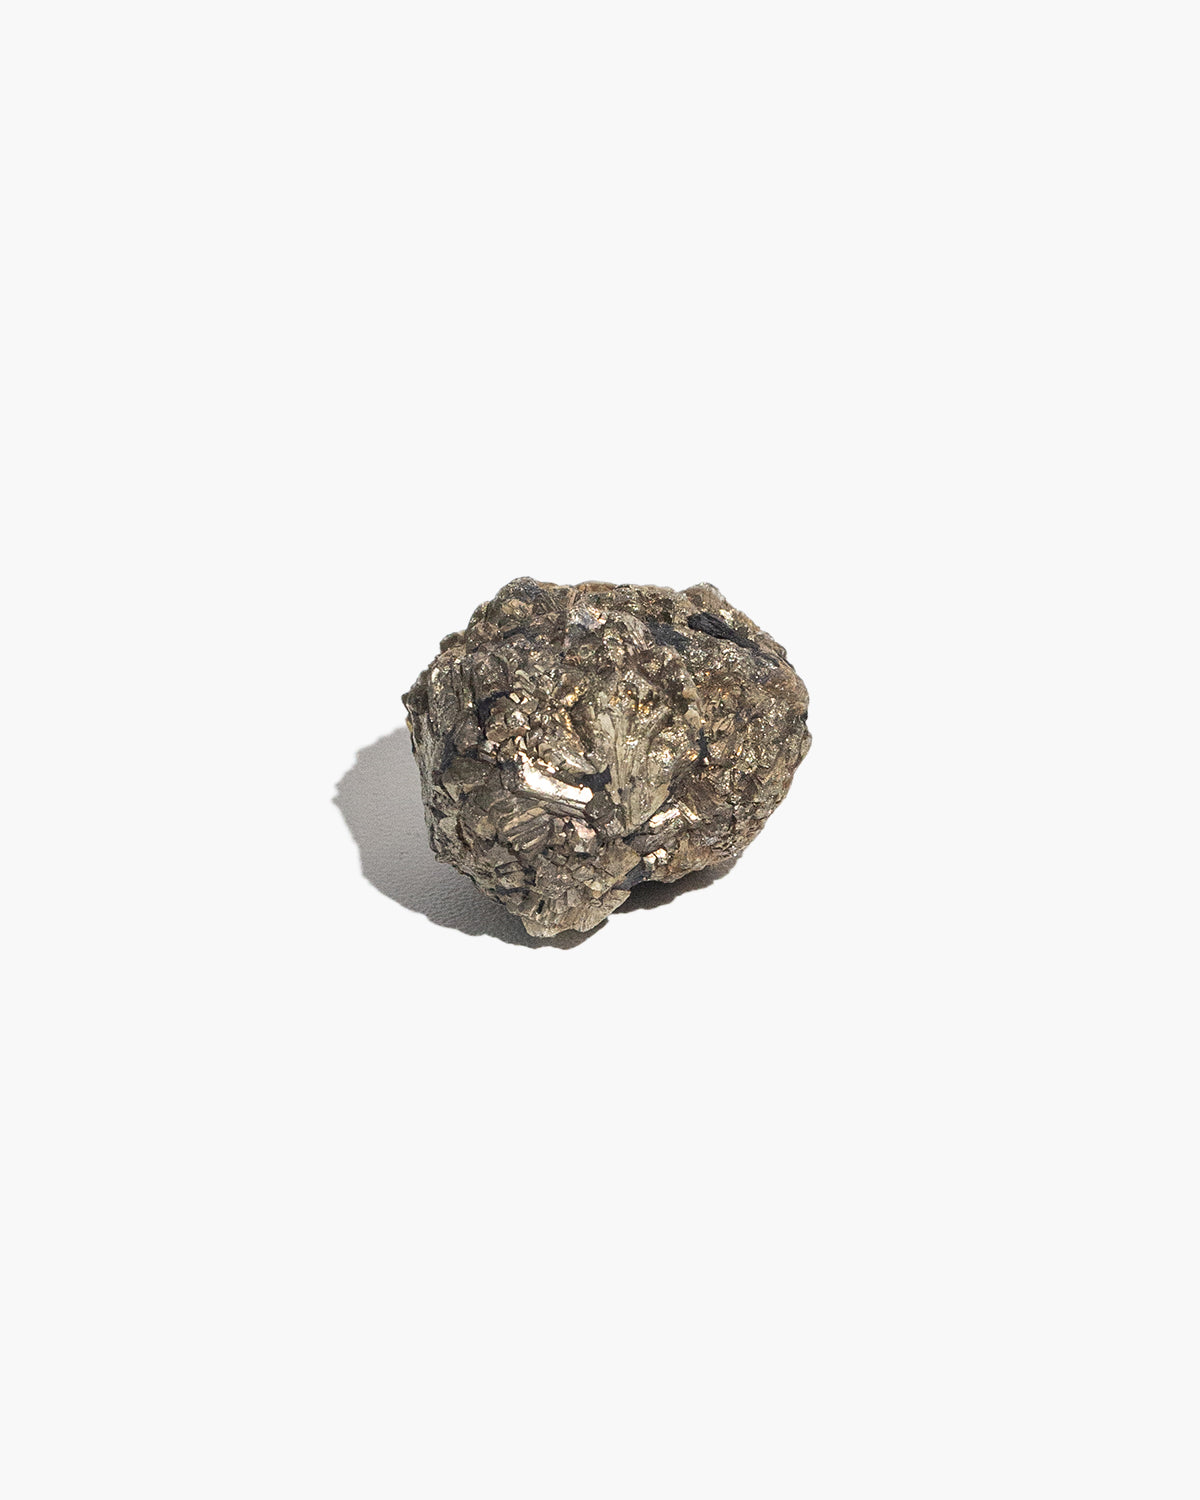 Super Nova Pyrite (Marcasite with Graphite) Cluster – N°02